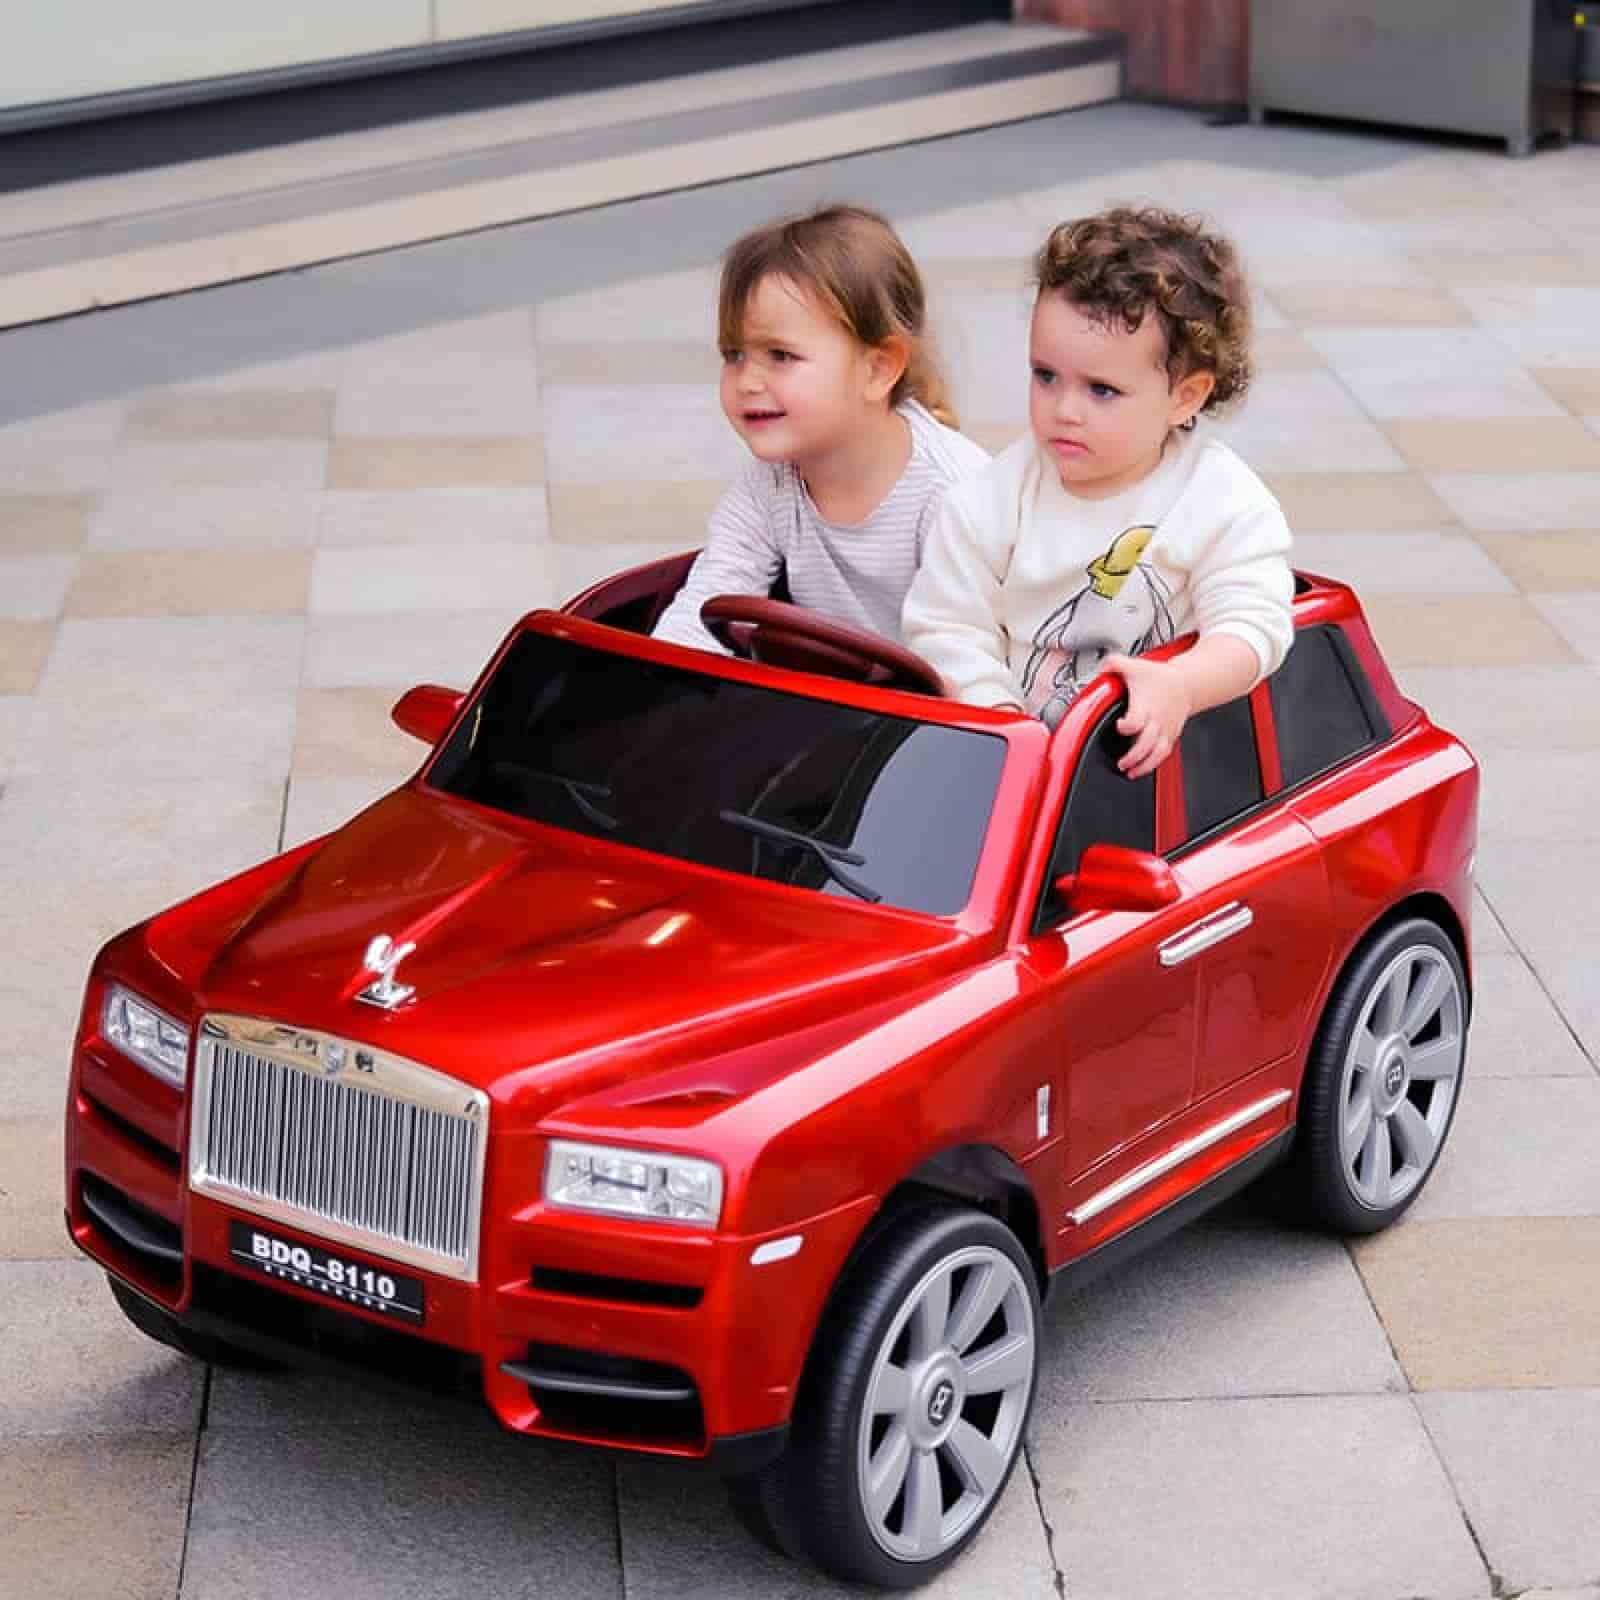 Xe ô tô điện trẻ em - món đồ chơi cực kỳ lành mạnh